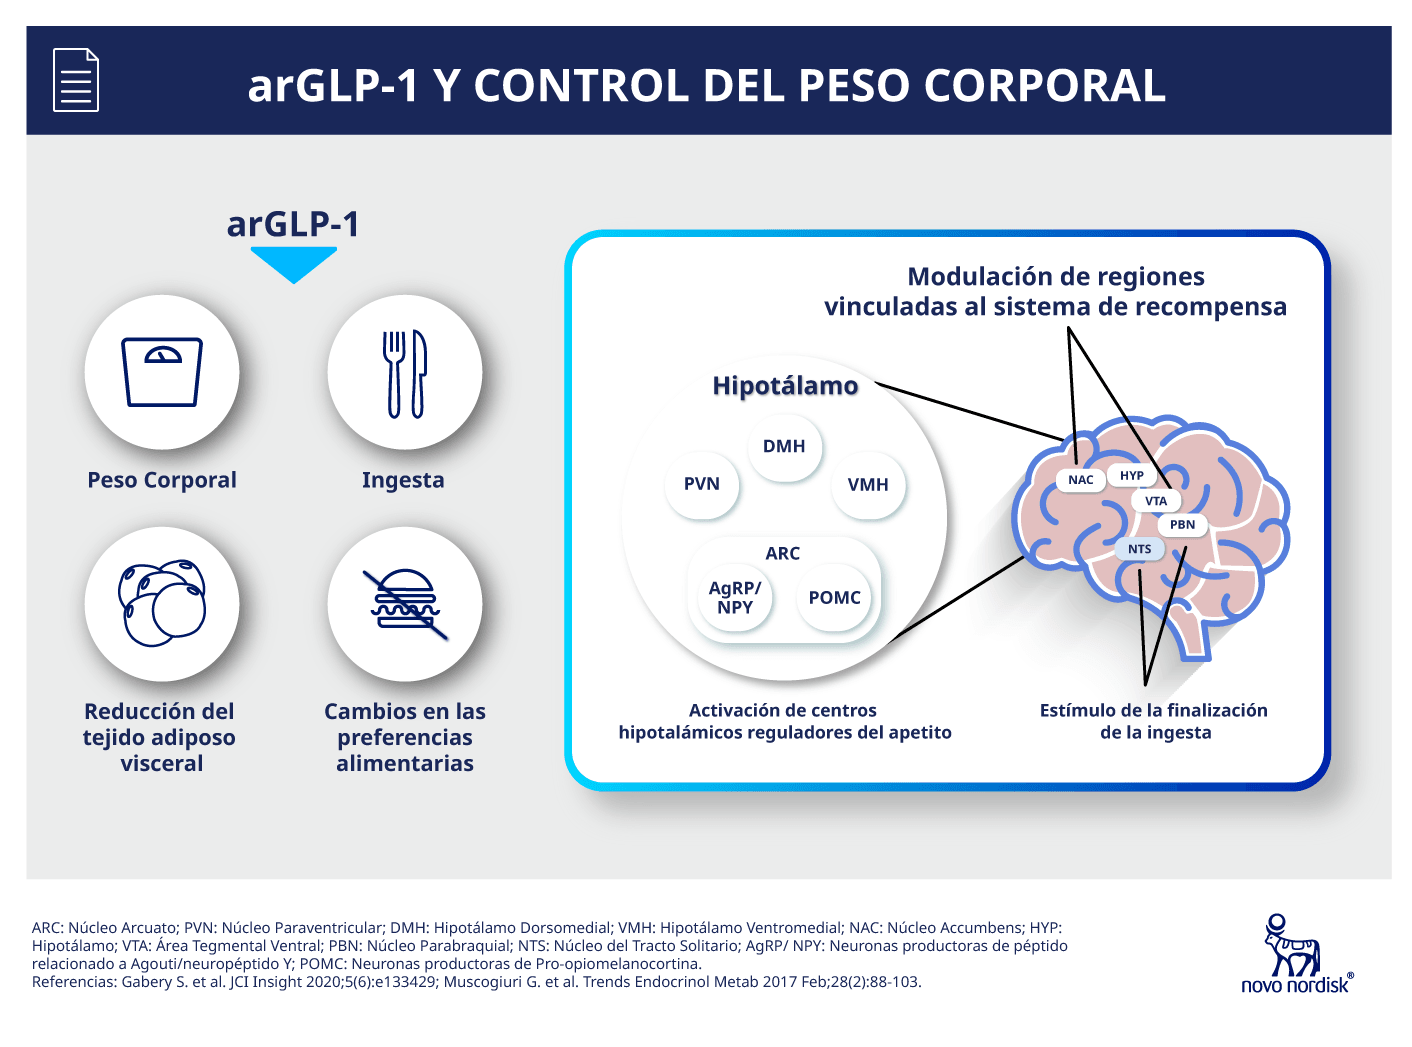 arGLP-1 y control del peso corporal